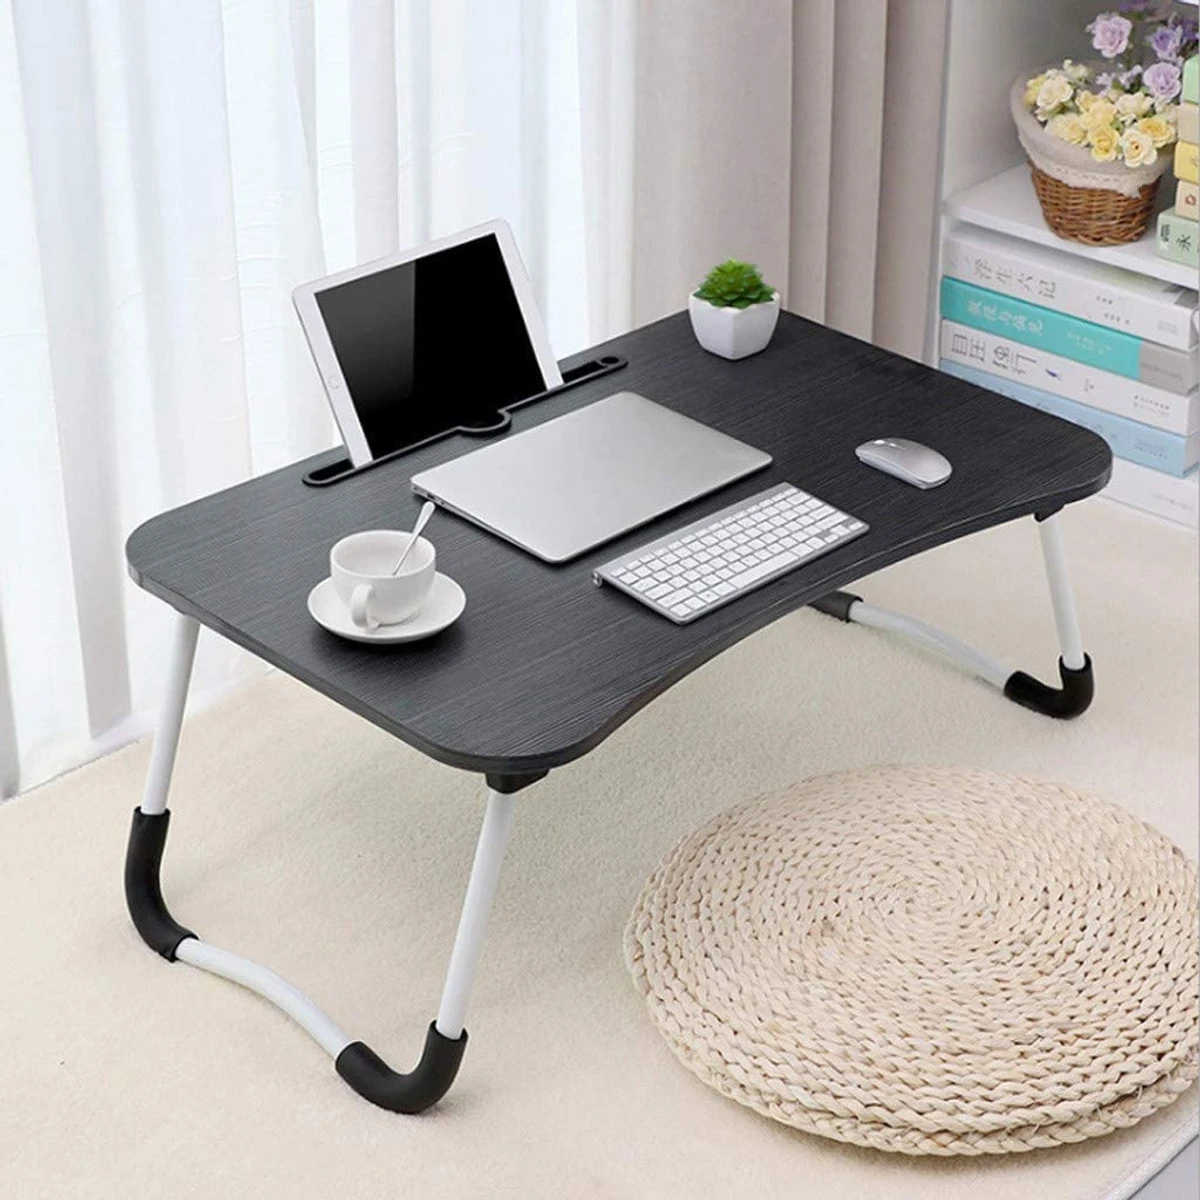 Folding Desk Home Computer Stand Laptop Desk Notebook Desk Laptop Table- Black